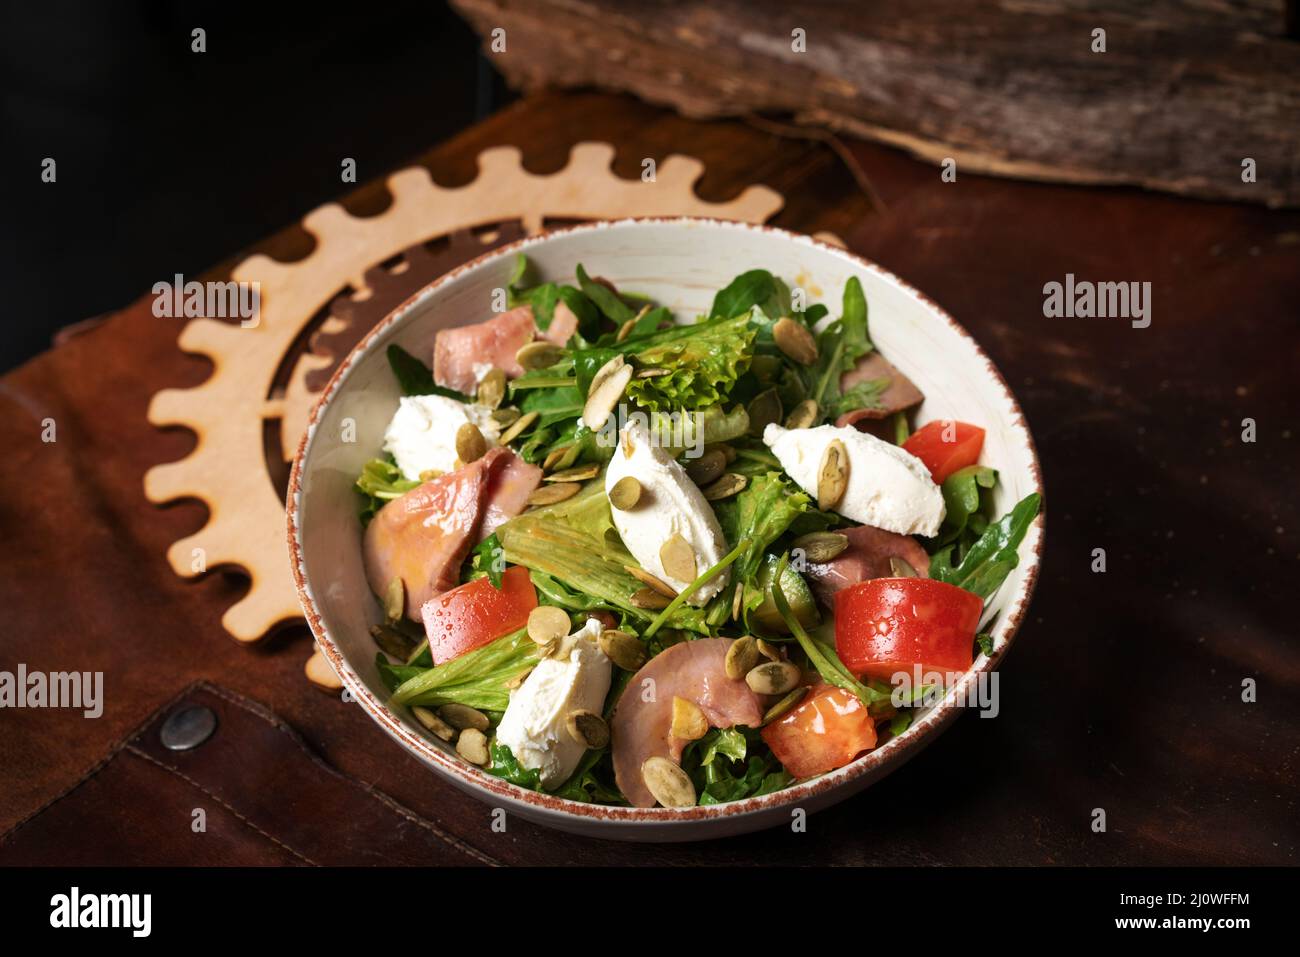 Salade de légumes frais avec légumes, poisson, fromage, œuf, graines de citrouille, Arugula en céramique blanche sur un tablier en cuir. Vue de dessus Banque D'Images